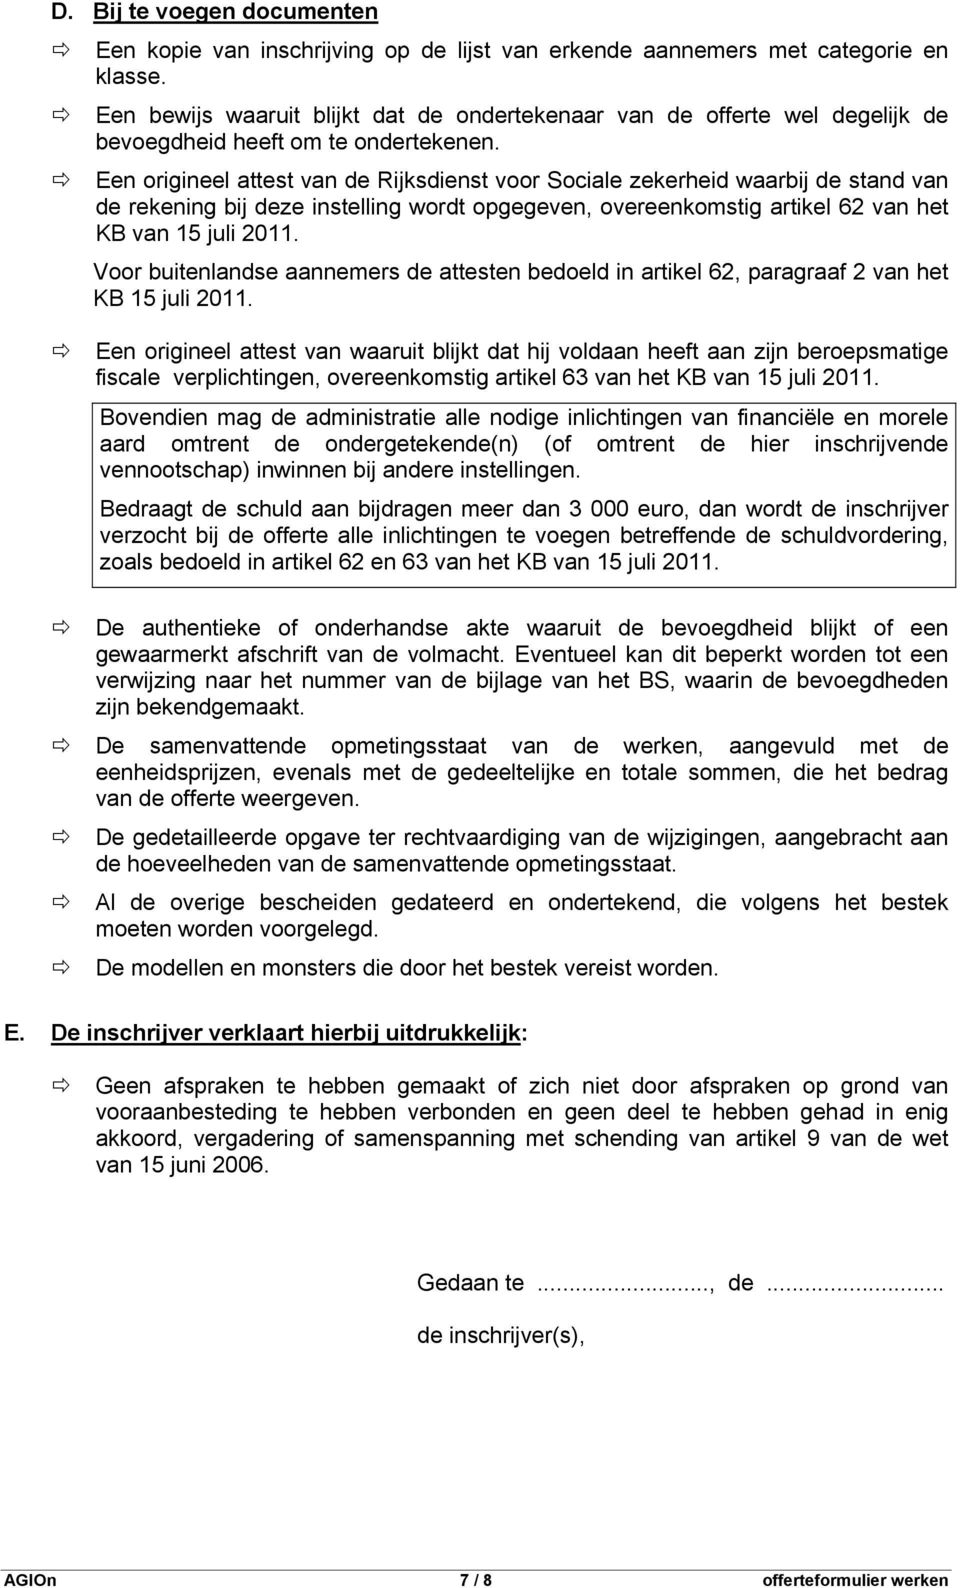 Een origineel attest van de Rijksdienst voor Sociale zekerheid waarbij de stand van de rekening bij deze instelling wordt opgegeven, overeenkomstig artikel 62 van het KB van 15 juli 2011.